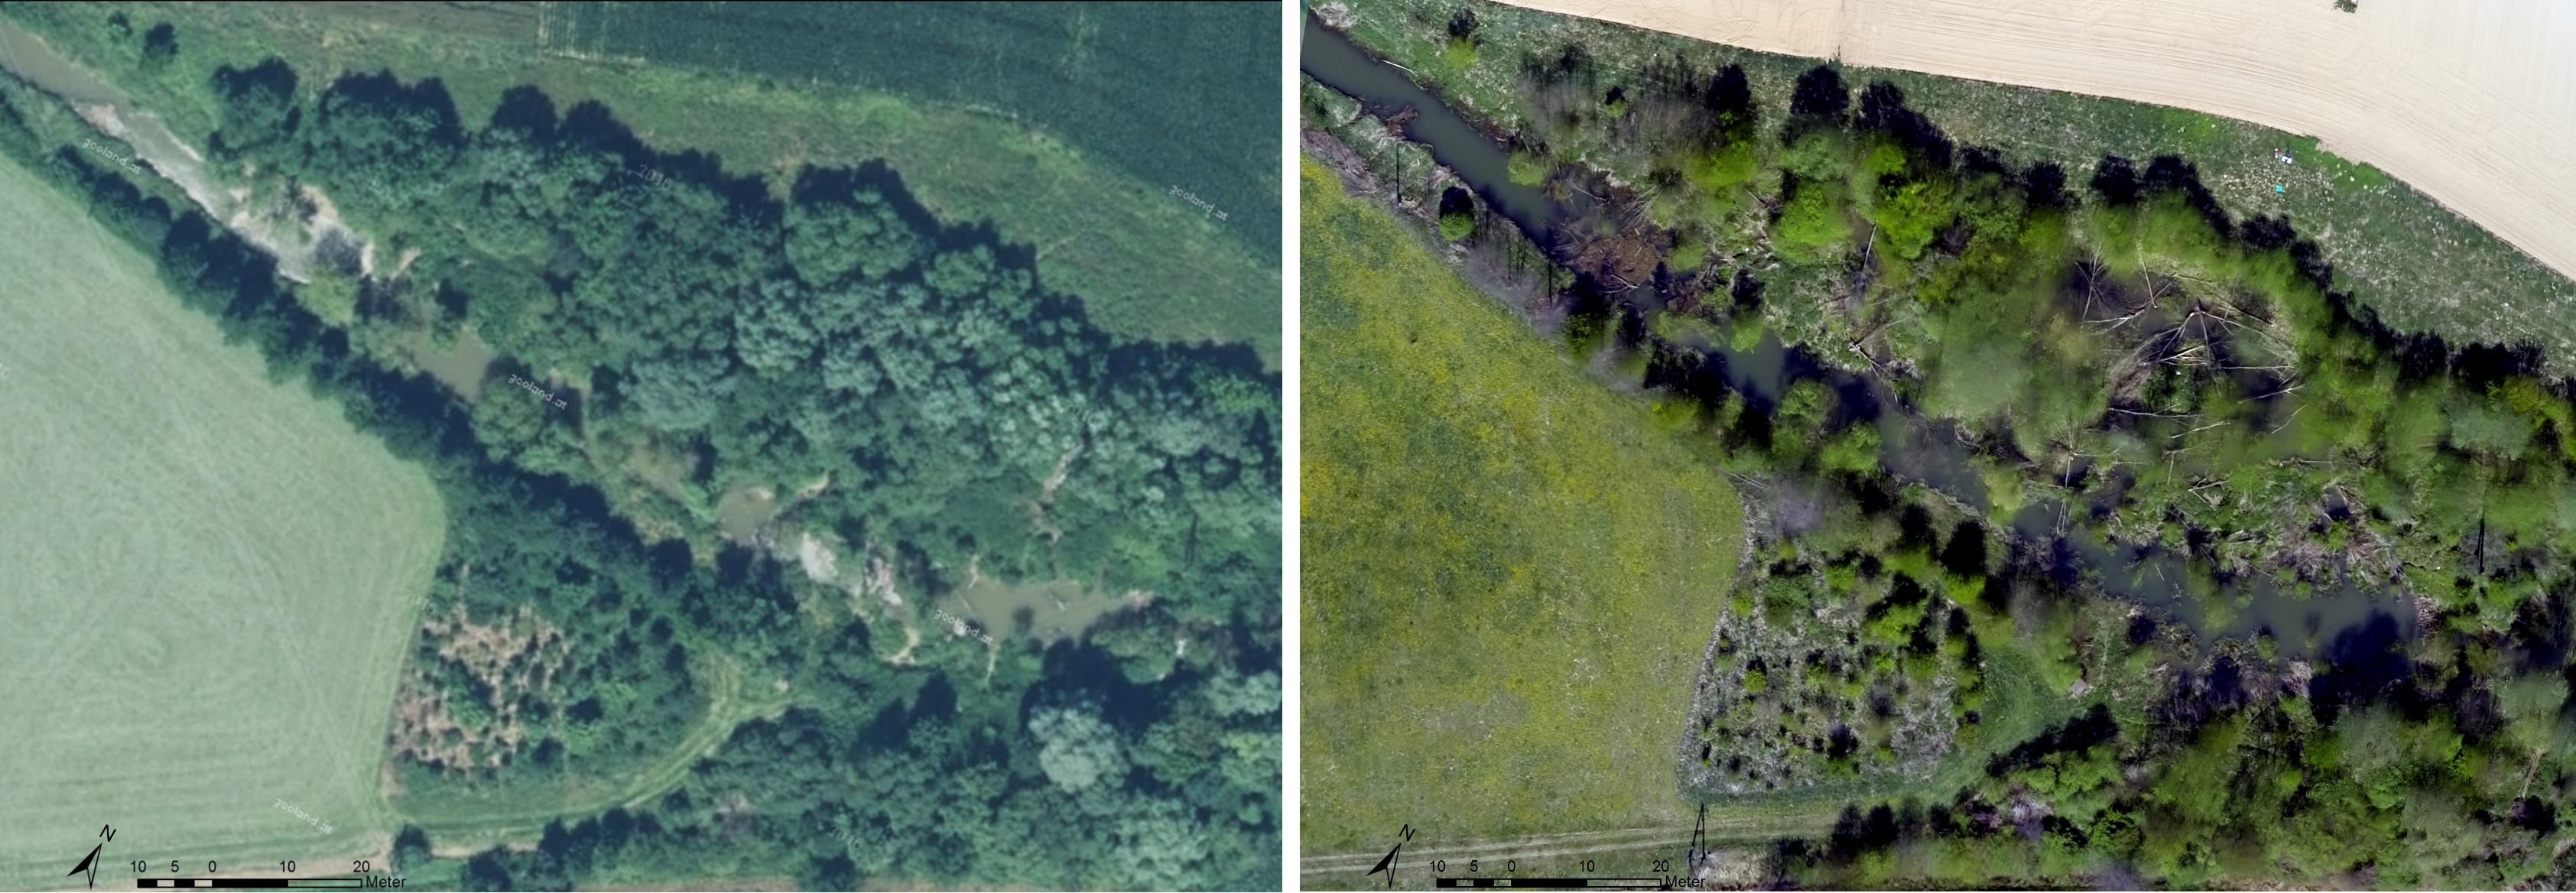 Vom Biber gestaltete Landschaft an der Rittschein. basemap.at (2016) vs. Drohnenbefliegung ÖKOTEAM (März 2017).